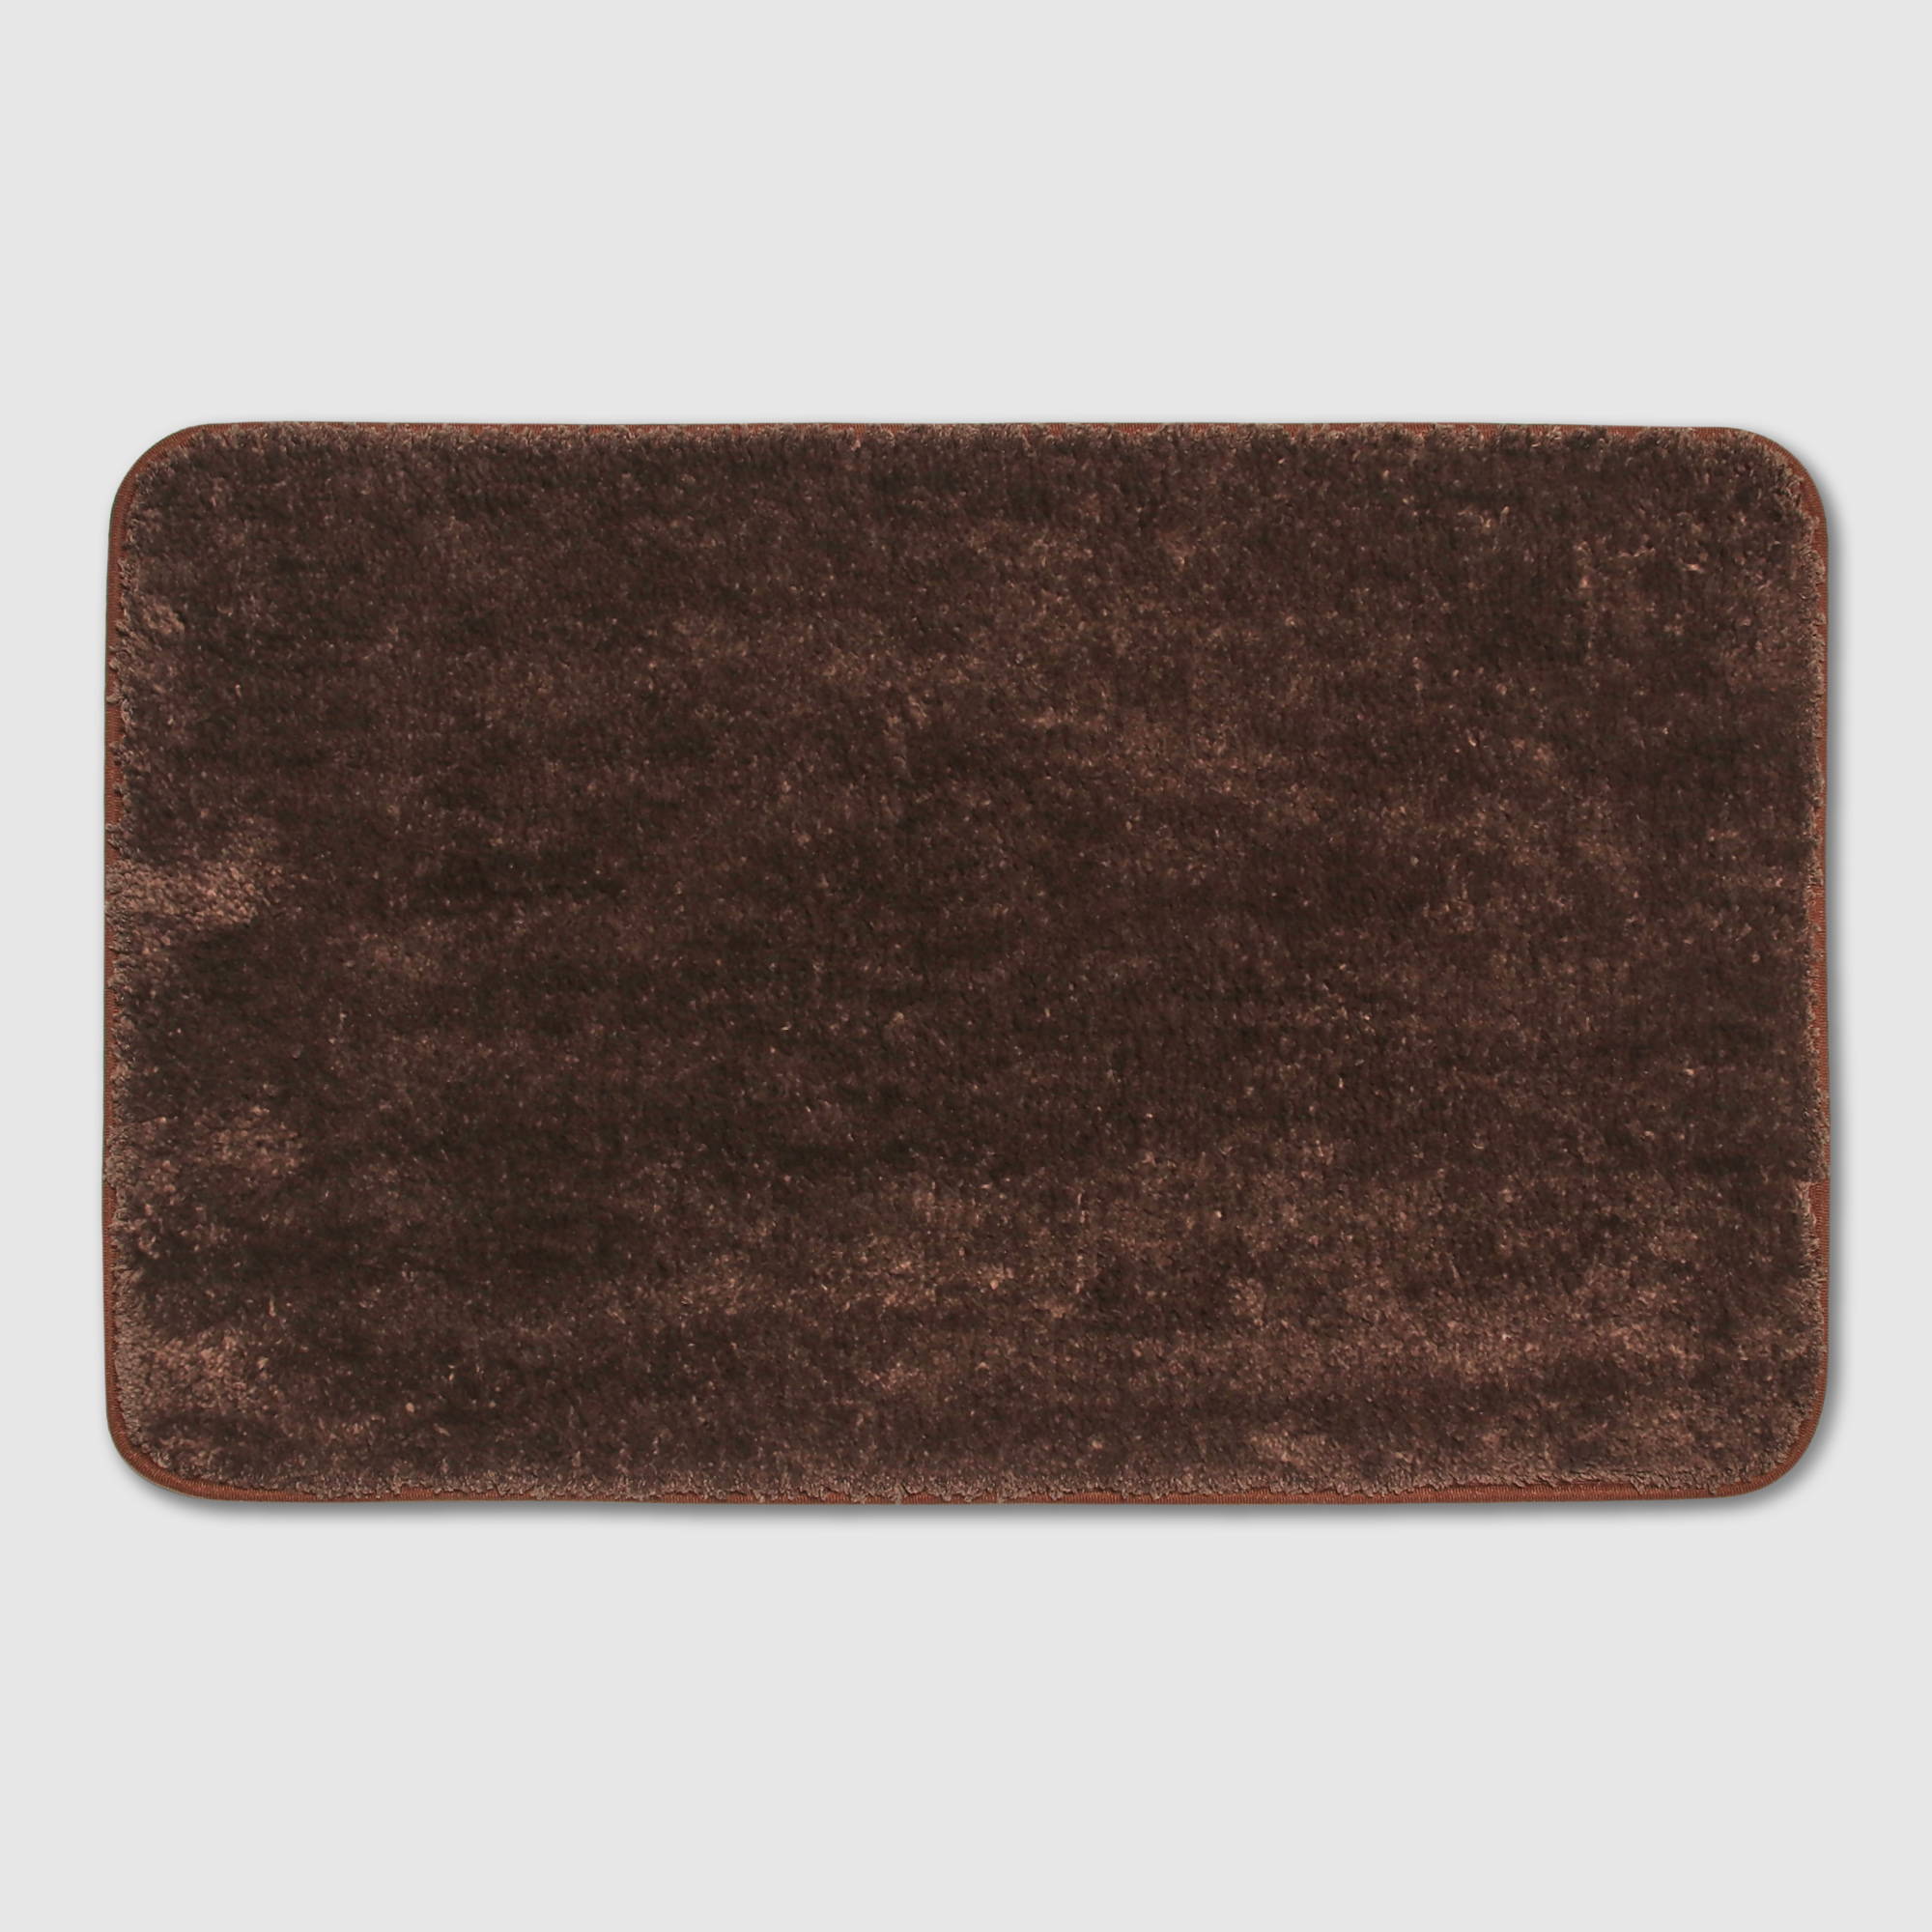 цена Коврик Silverstone Carpet коричневый 50х80 см